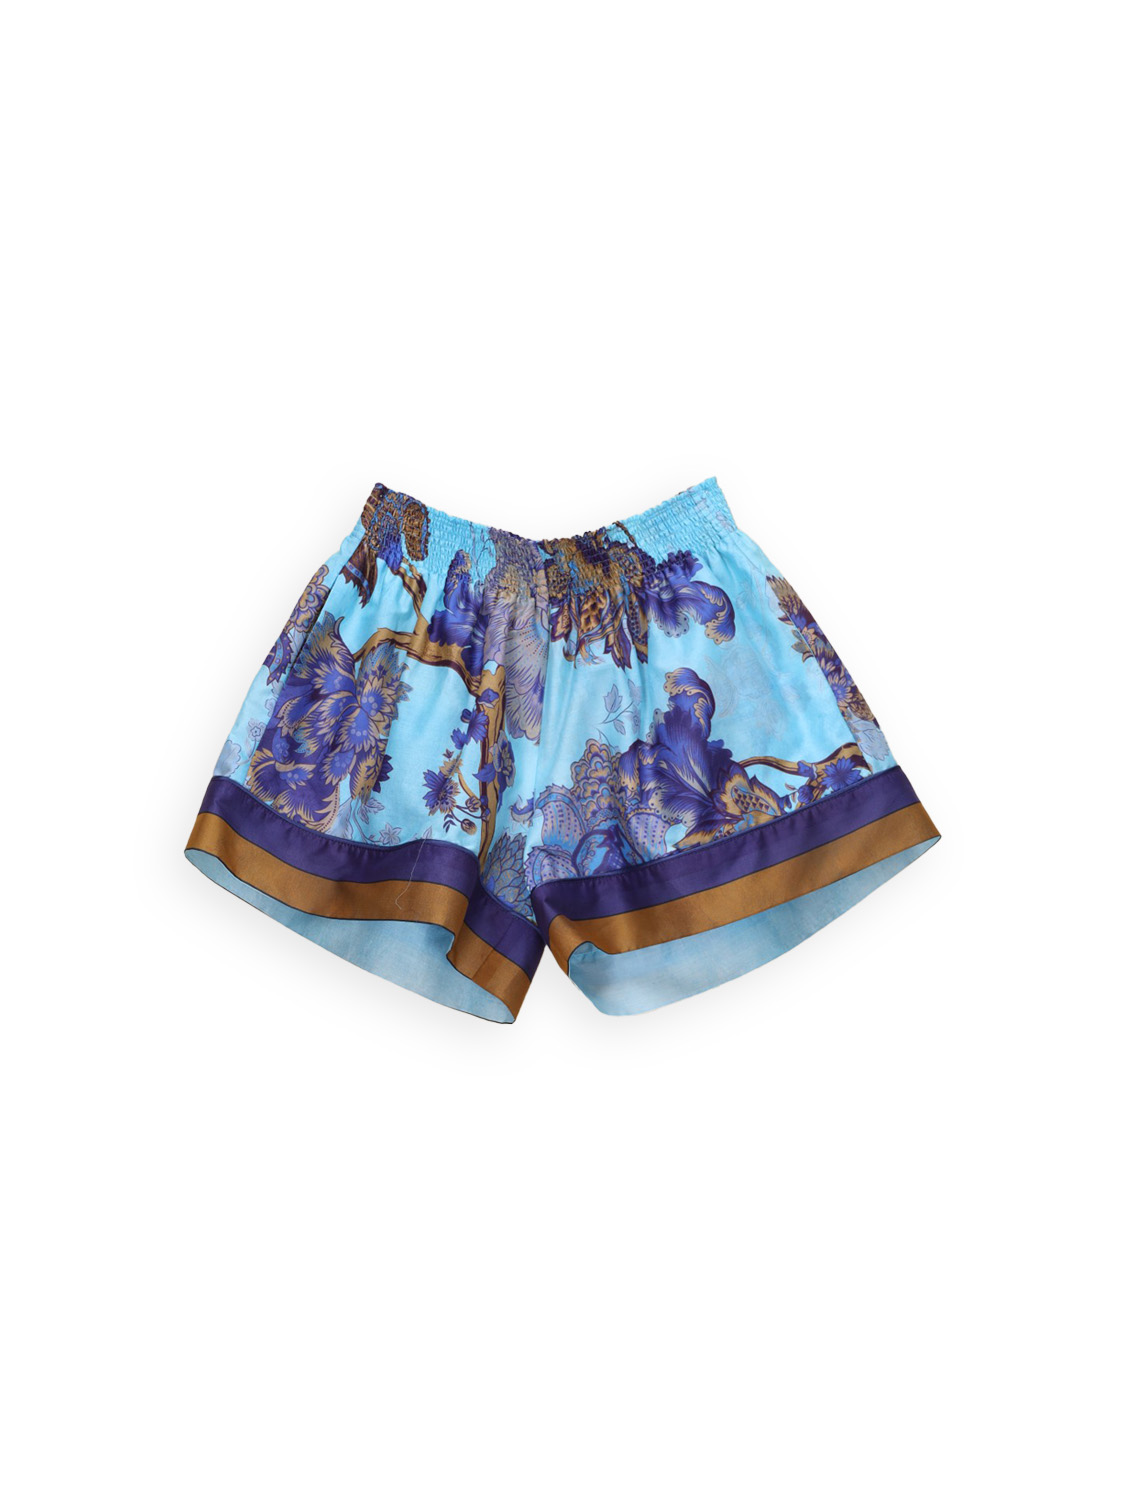 For restless sleepers Baumwoll-Shorts mit Blumen Design    mehrfarbig S